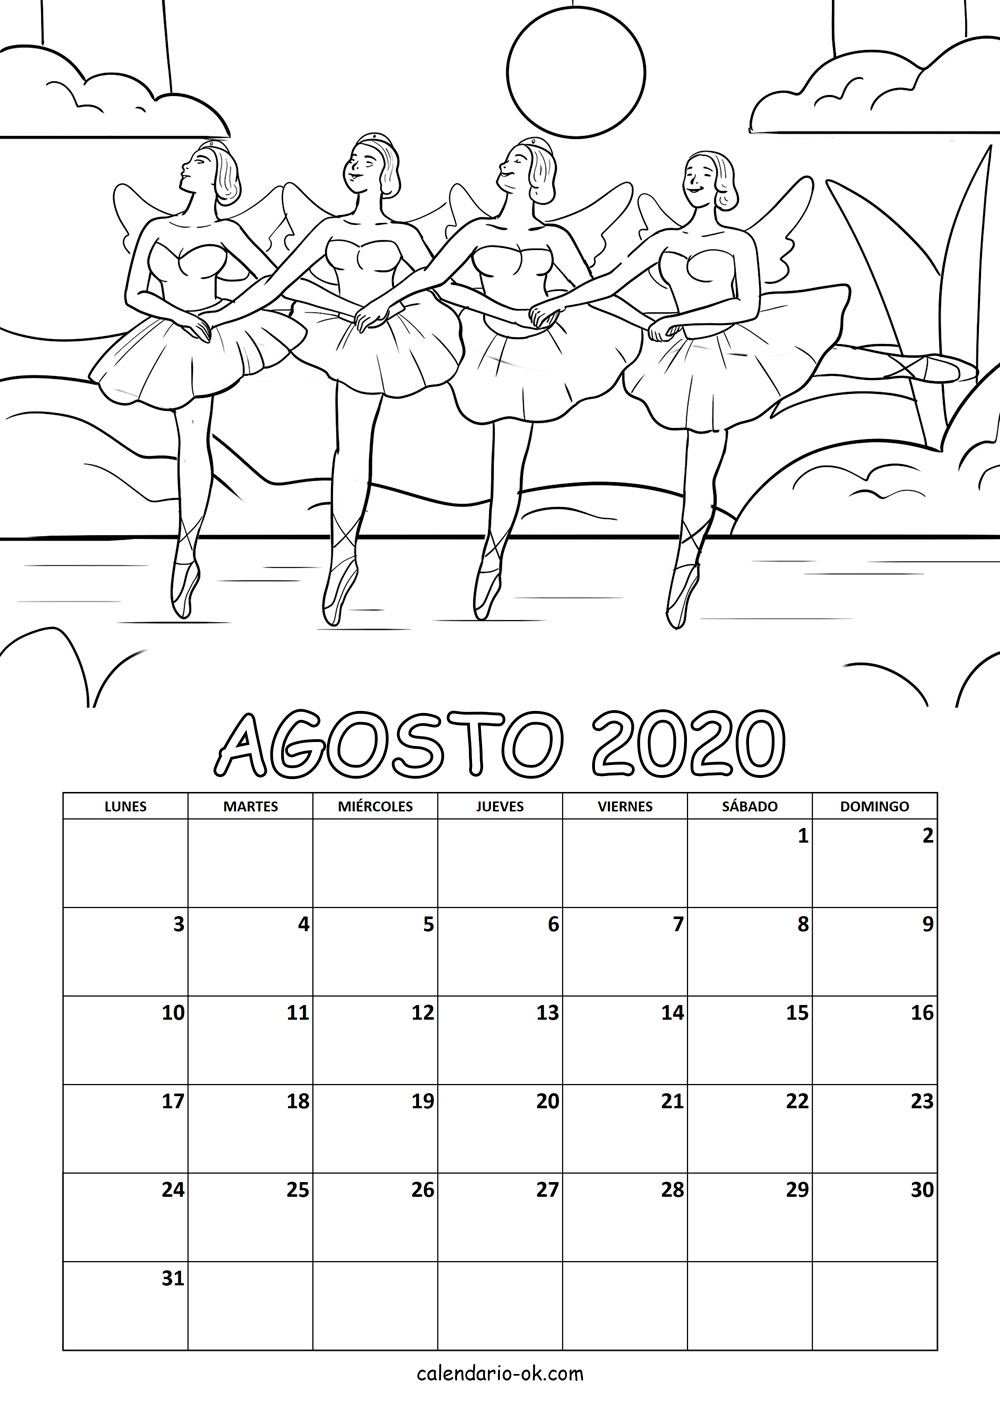 Calendario AGOSTO 2020 COLOREAR